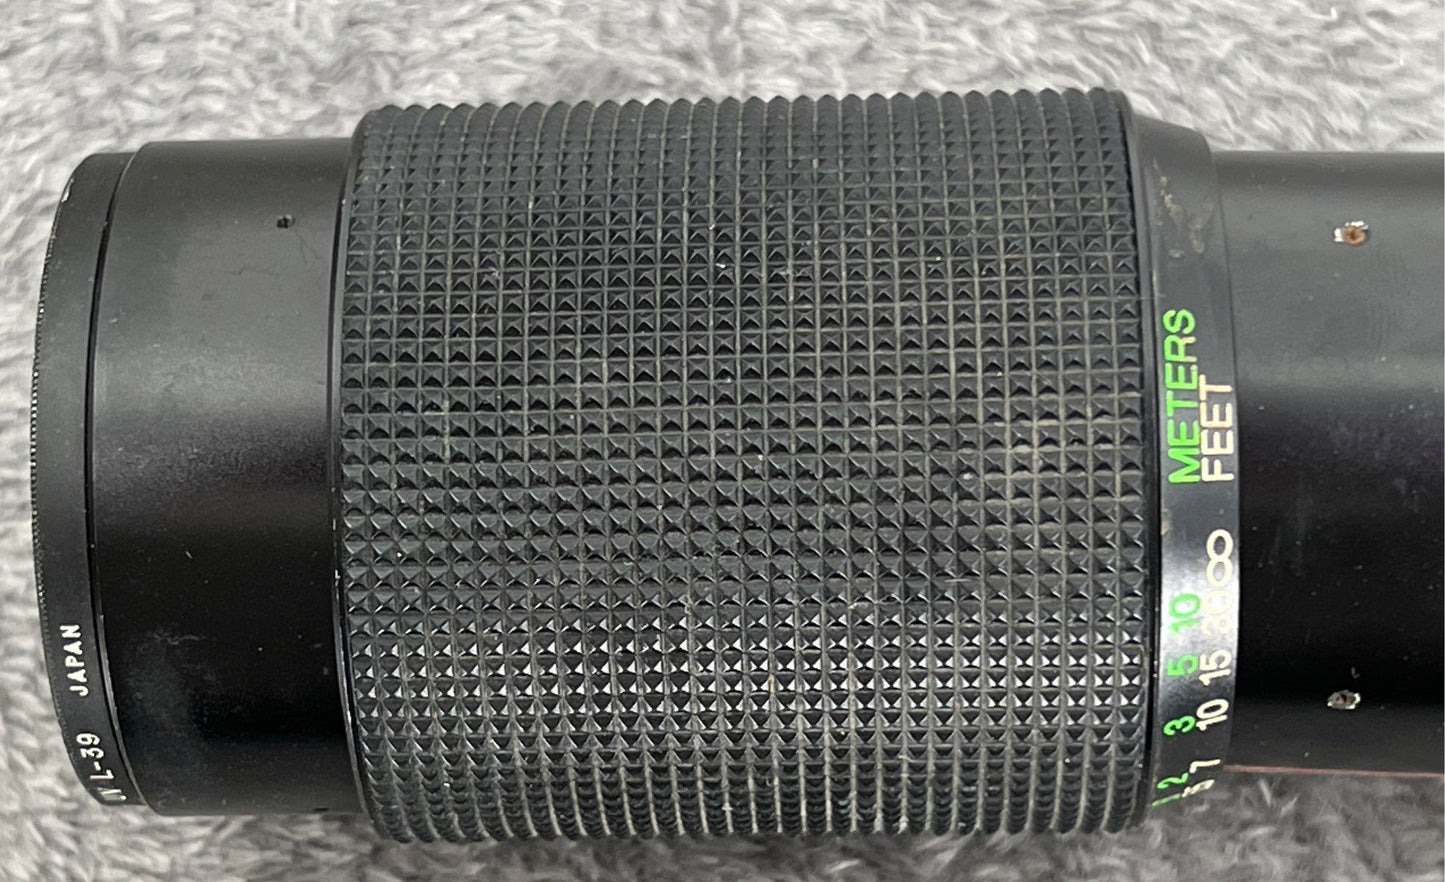 Vintage Vivitar 70-210mm F4.5 Macro 1:4x Lens For Nikon N/AI